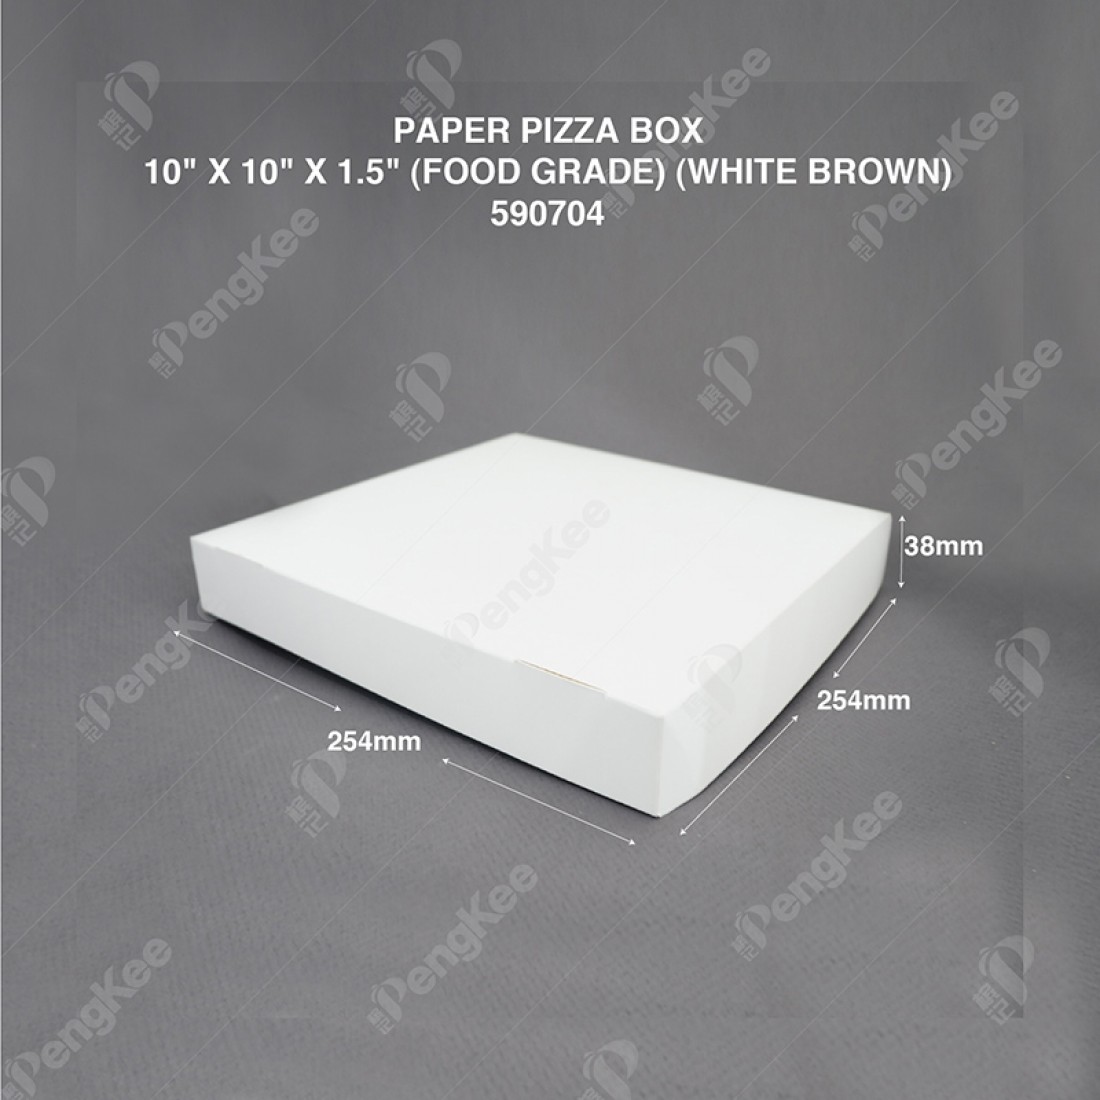 PAPER PIZZA BOX 10" X 10" X 1.5" (FOOD GRADE) (WHITE BROWN) (100'S/PKT)